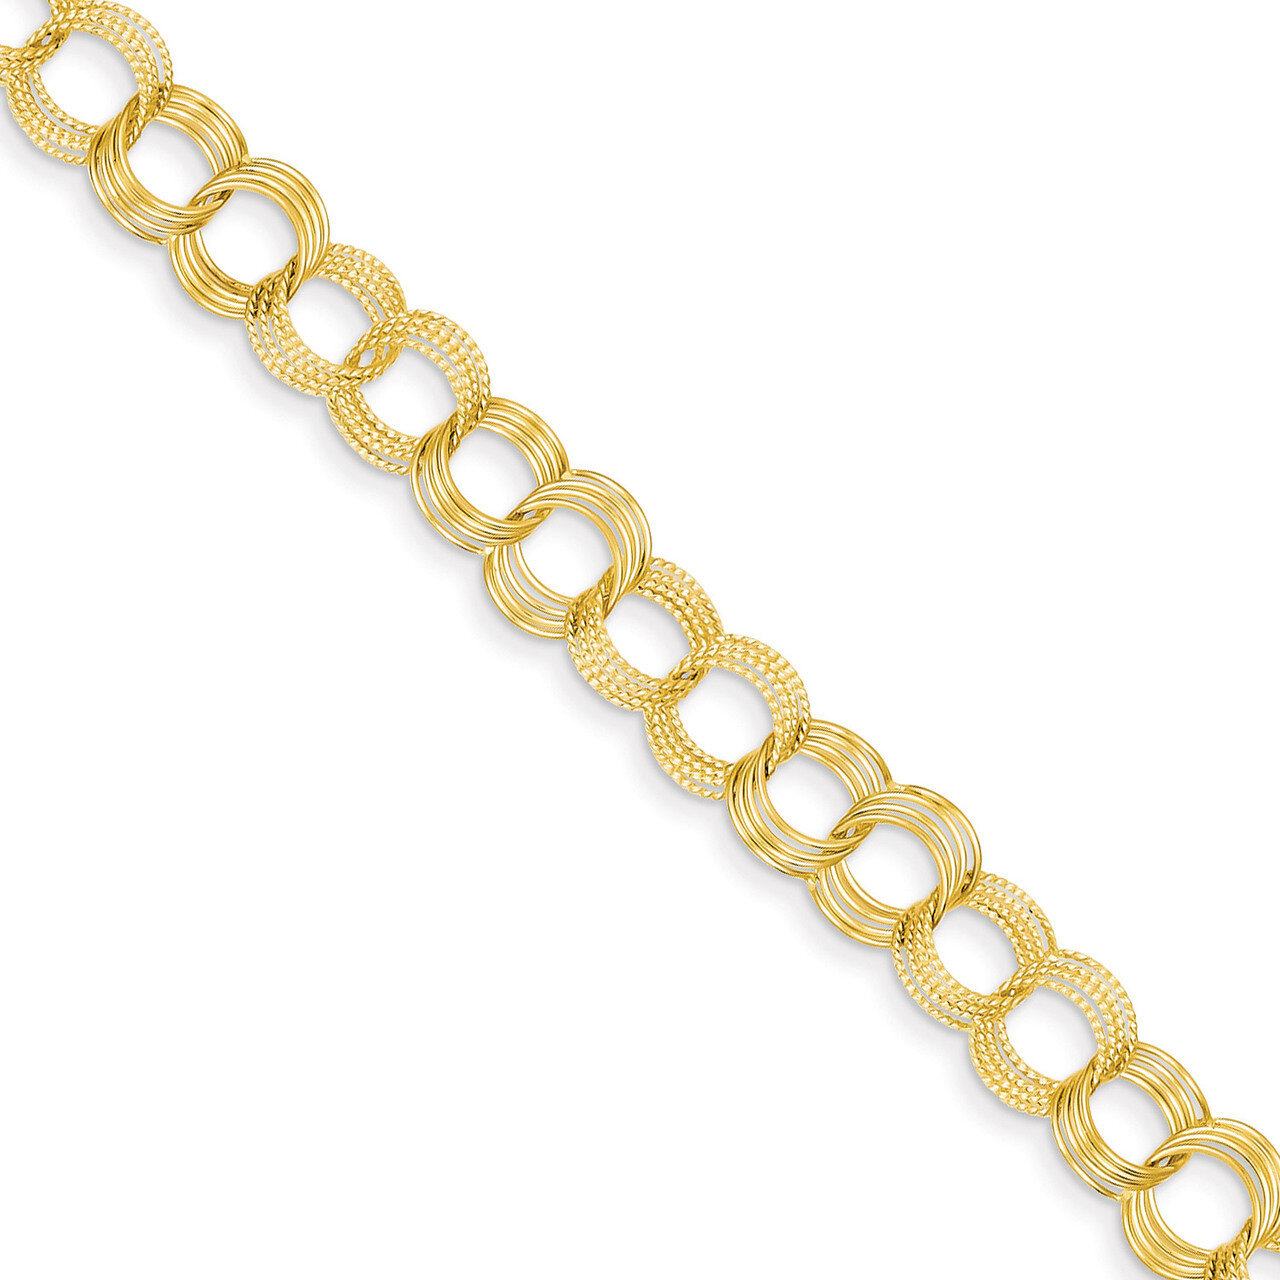 Triple Link Charm Bracelet 7 Inch 14k Gold Solid DO533-7